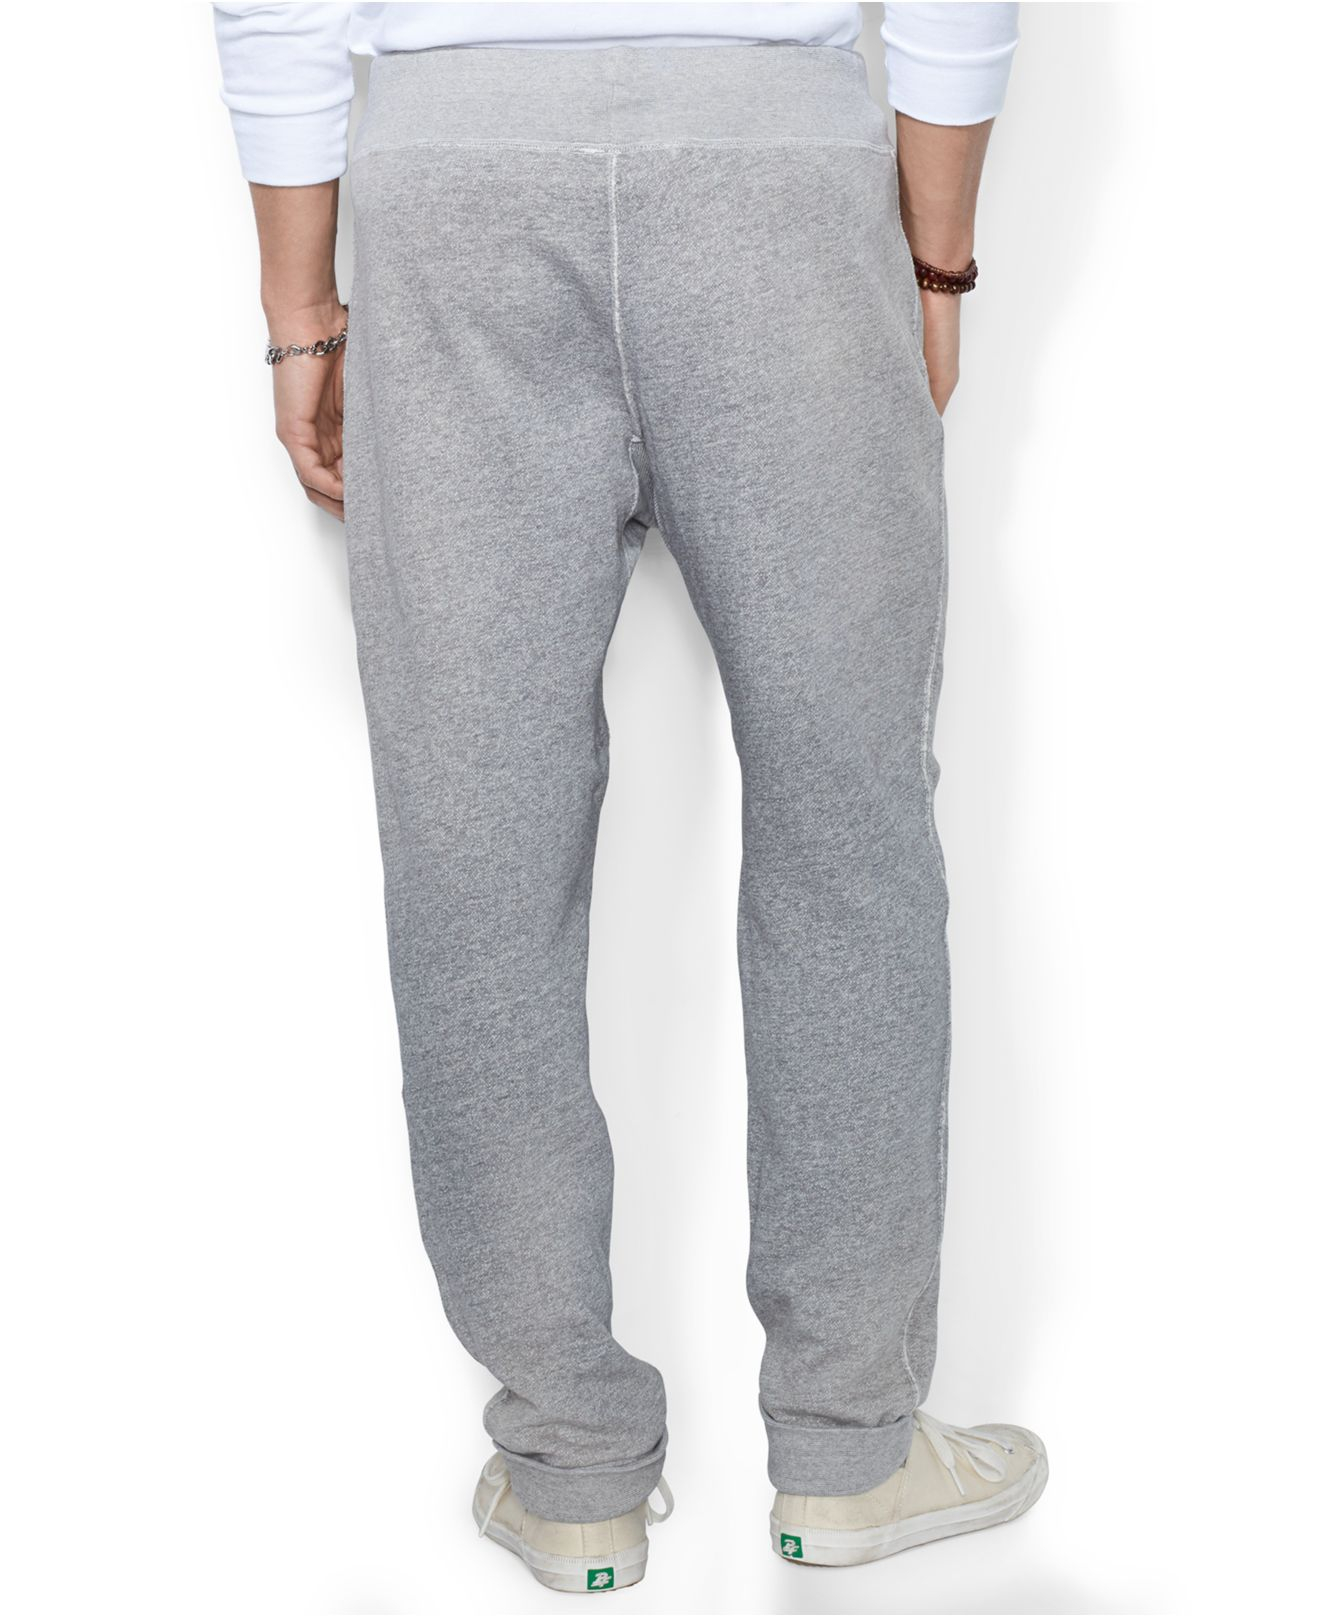 Lyst - Polo Ralph Lauren Fleece Track Pants in Gray for Men